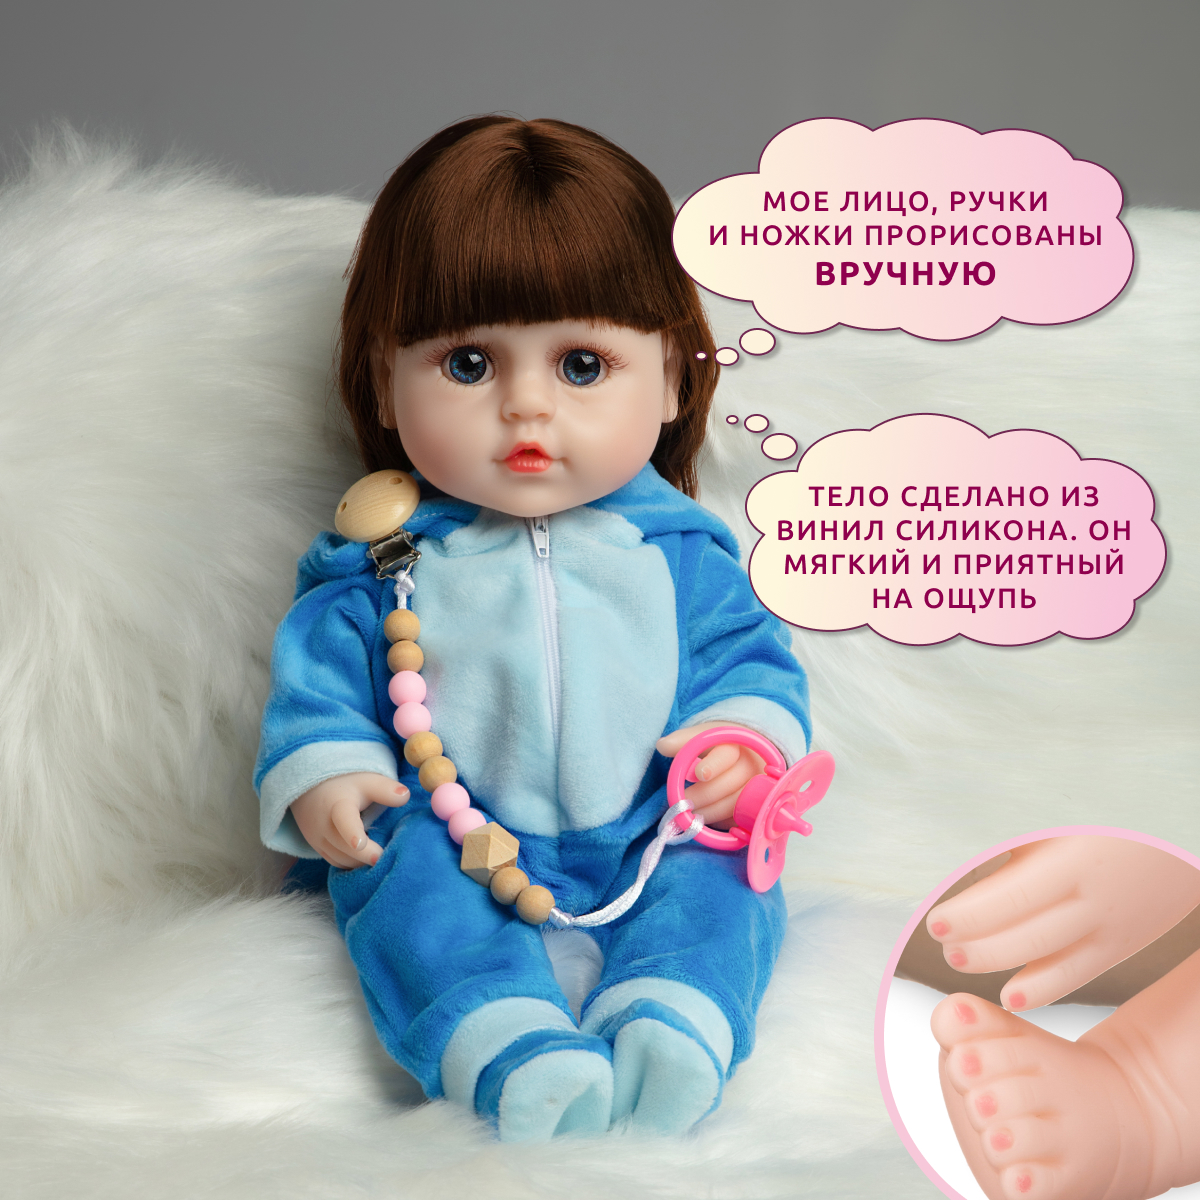 Кукла Реборн QA BABY Кэндис девочка интерактивная Пупс набор игрушки для ванной для девочки 38 см 3811 - фото 6